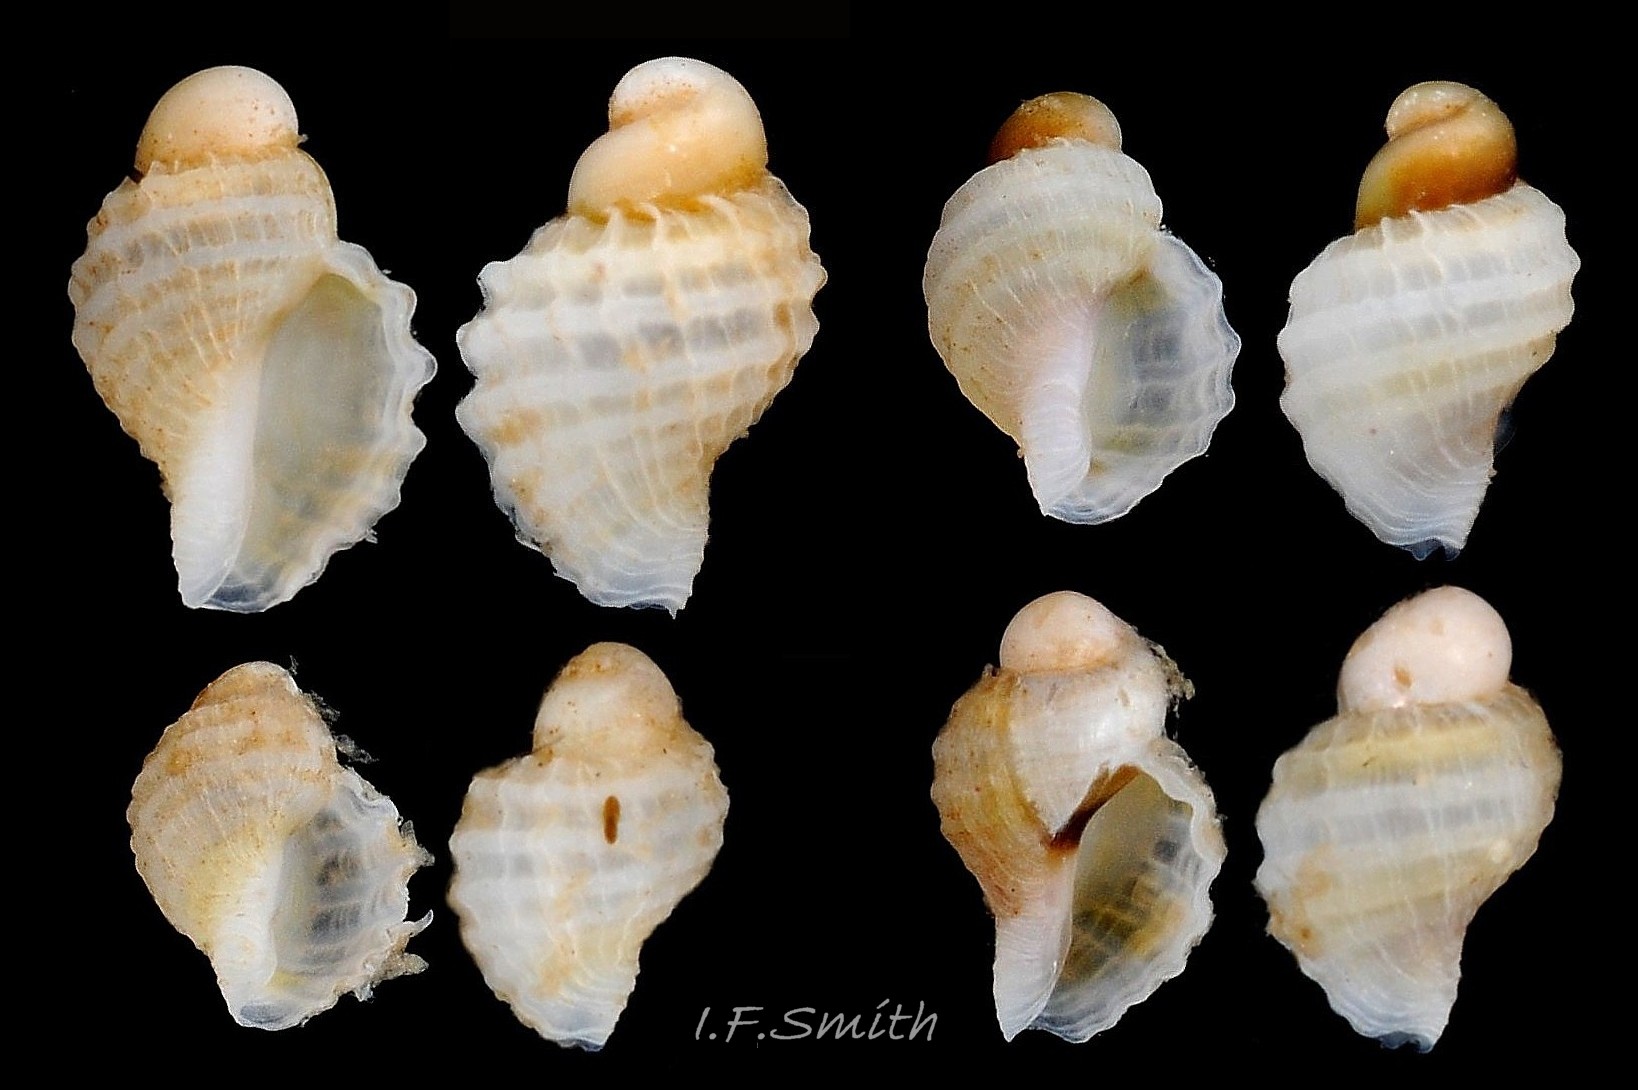 13 Nucella lapillus. Juveniles 2.2 mm to 3 mm high. Menai Strait, Wales. August 2013.